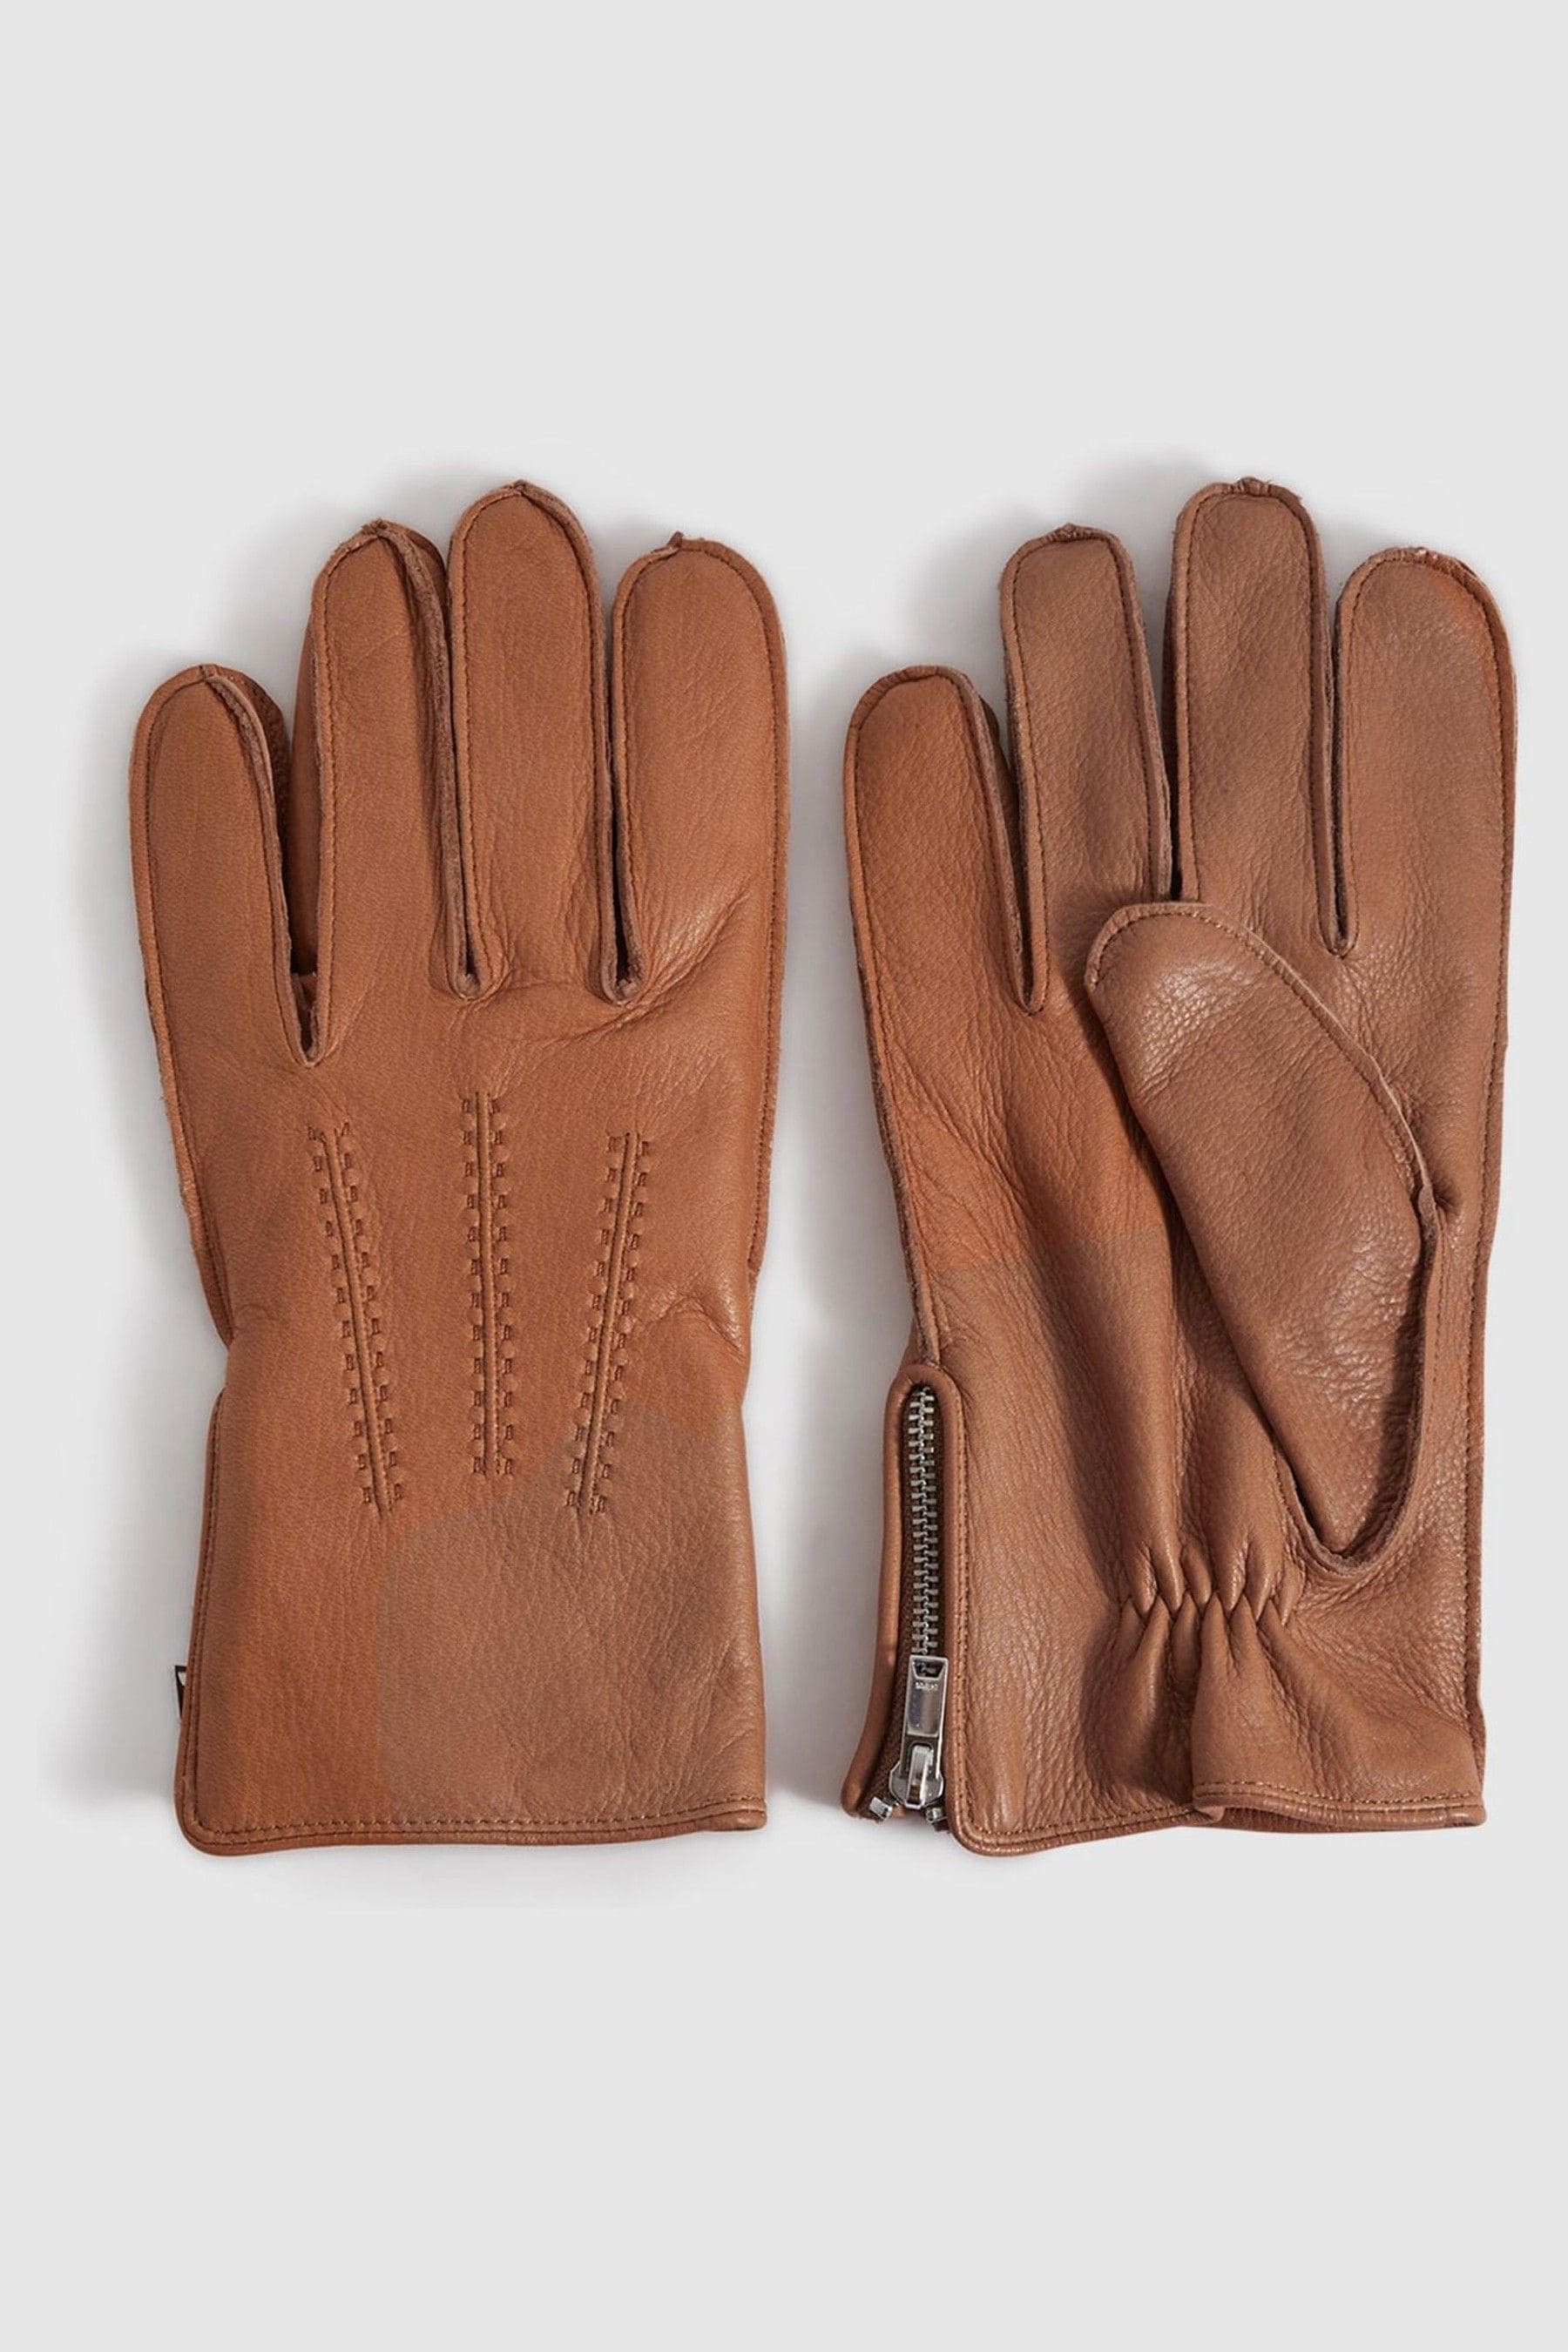 Reiss Iowa - Tan Leather Gloves, S